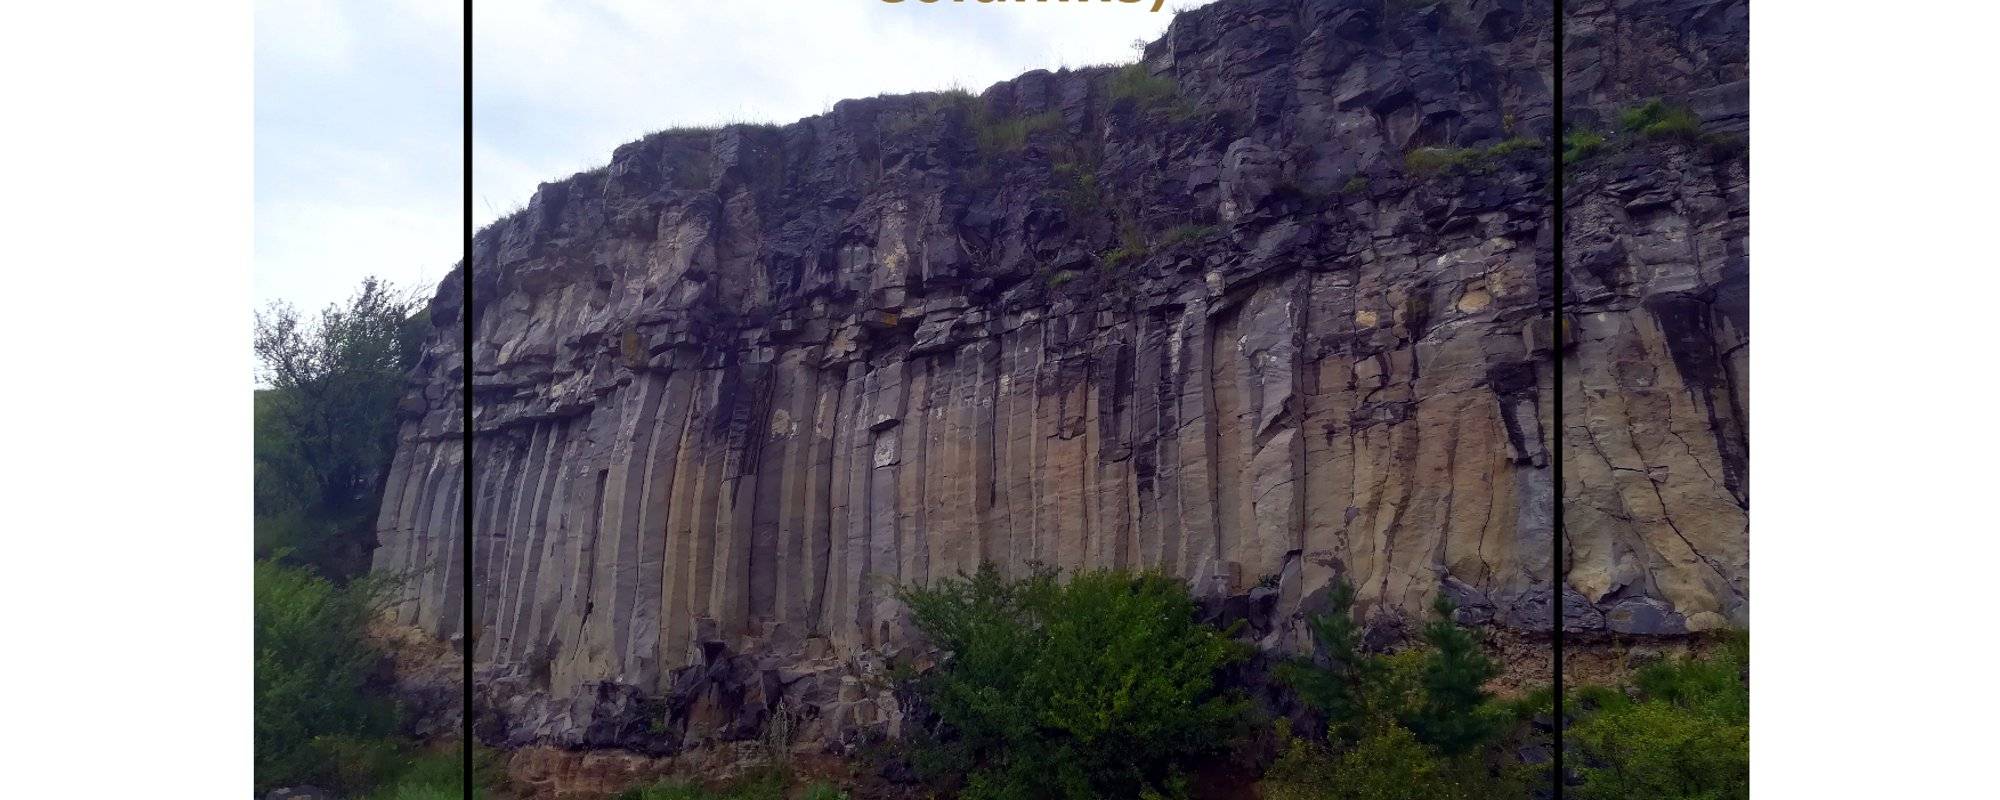 Let's travel together #106 - Coloanele de Bazalt (The Basalt Columns)